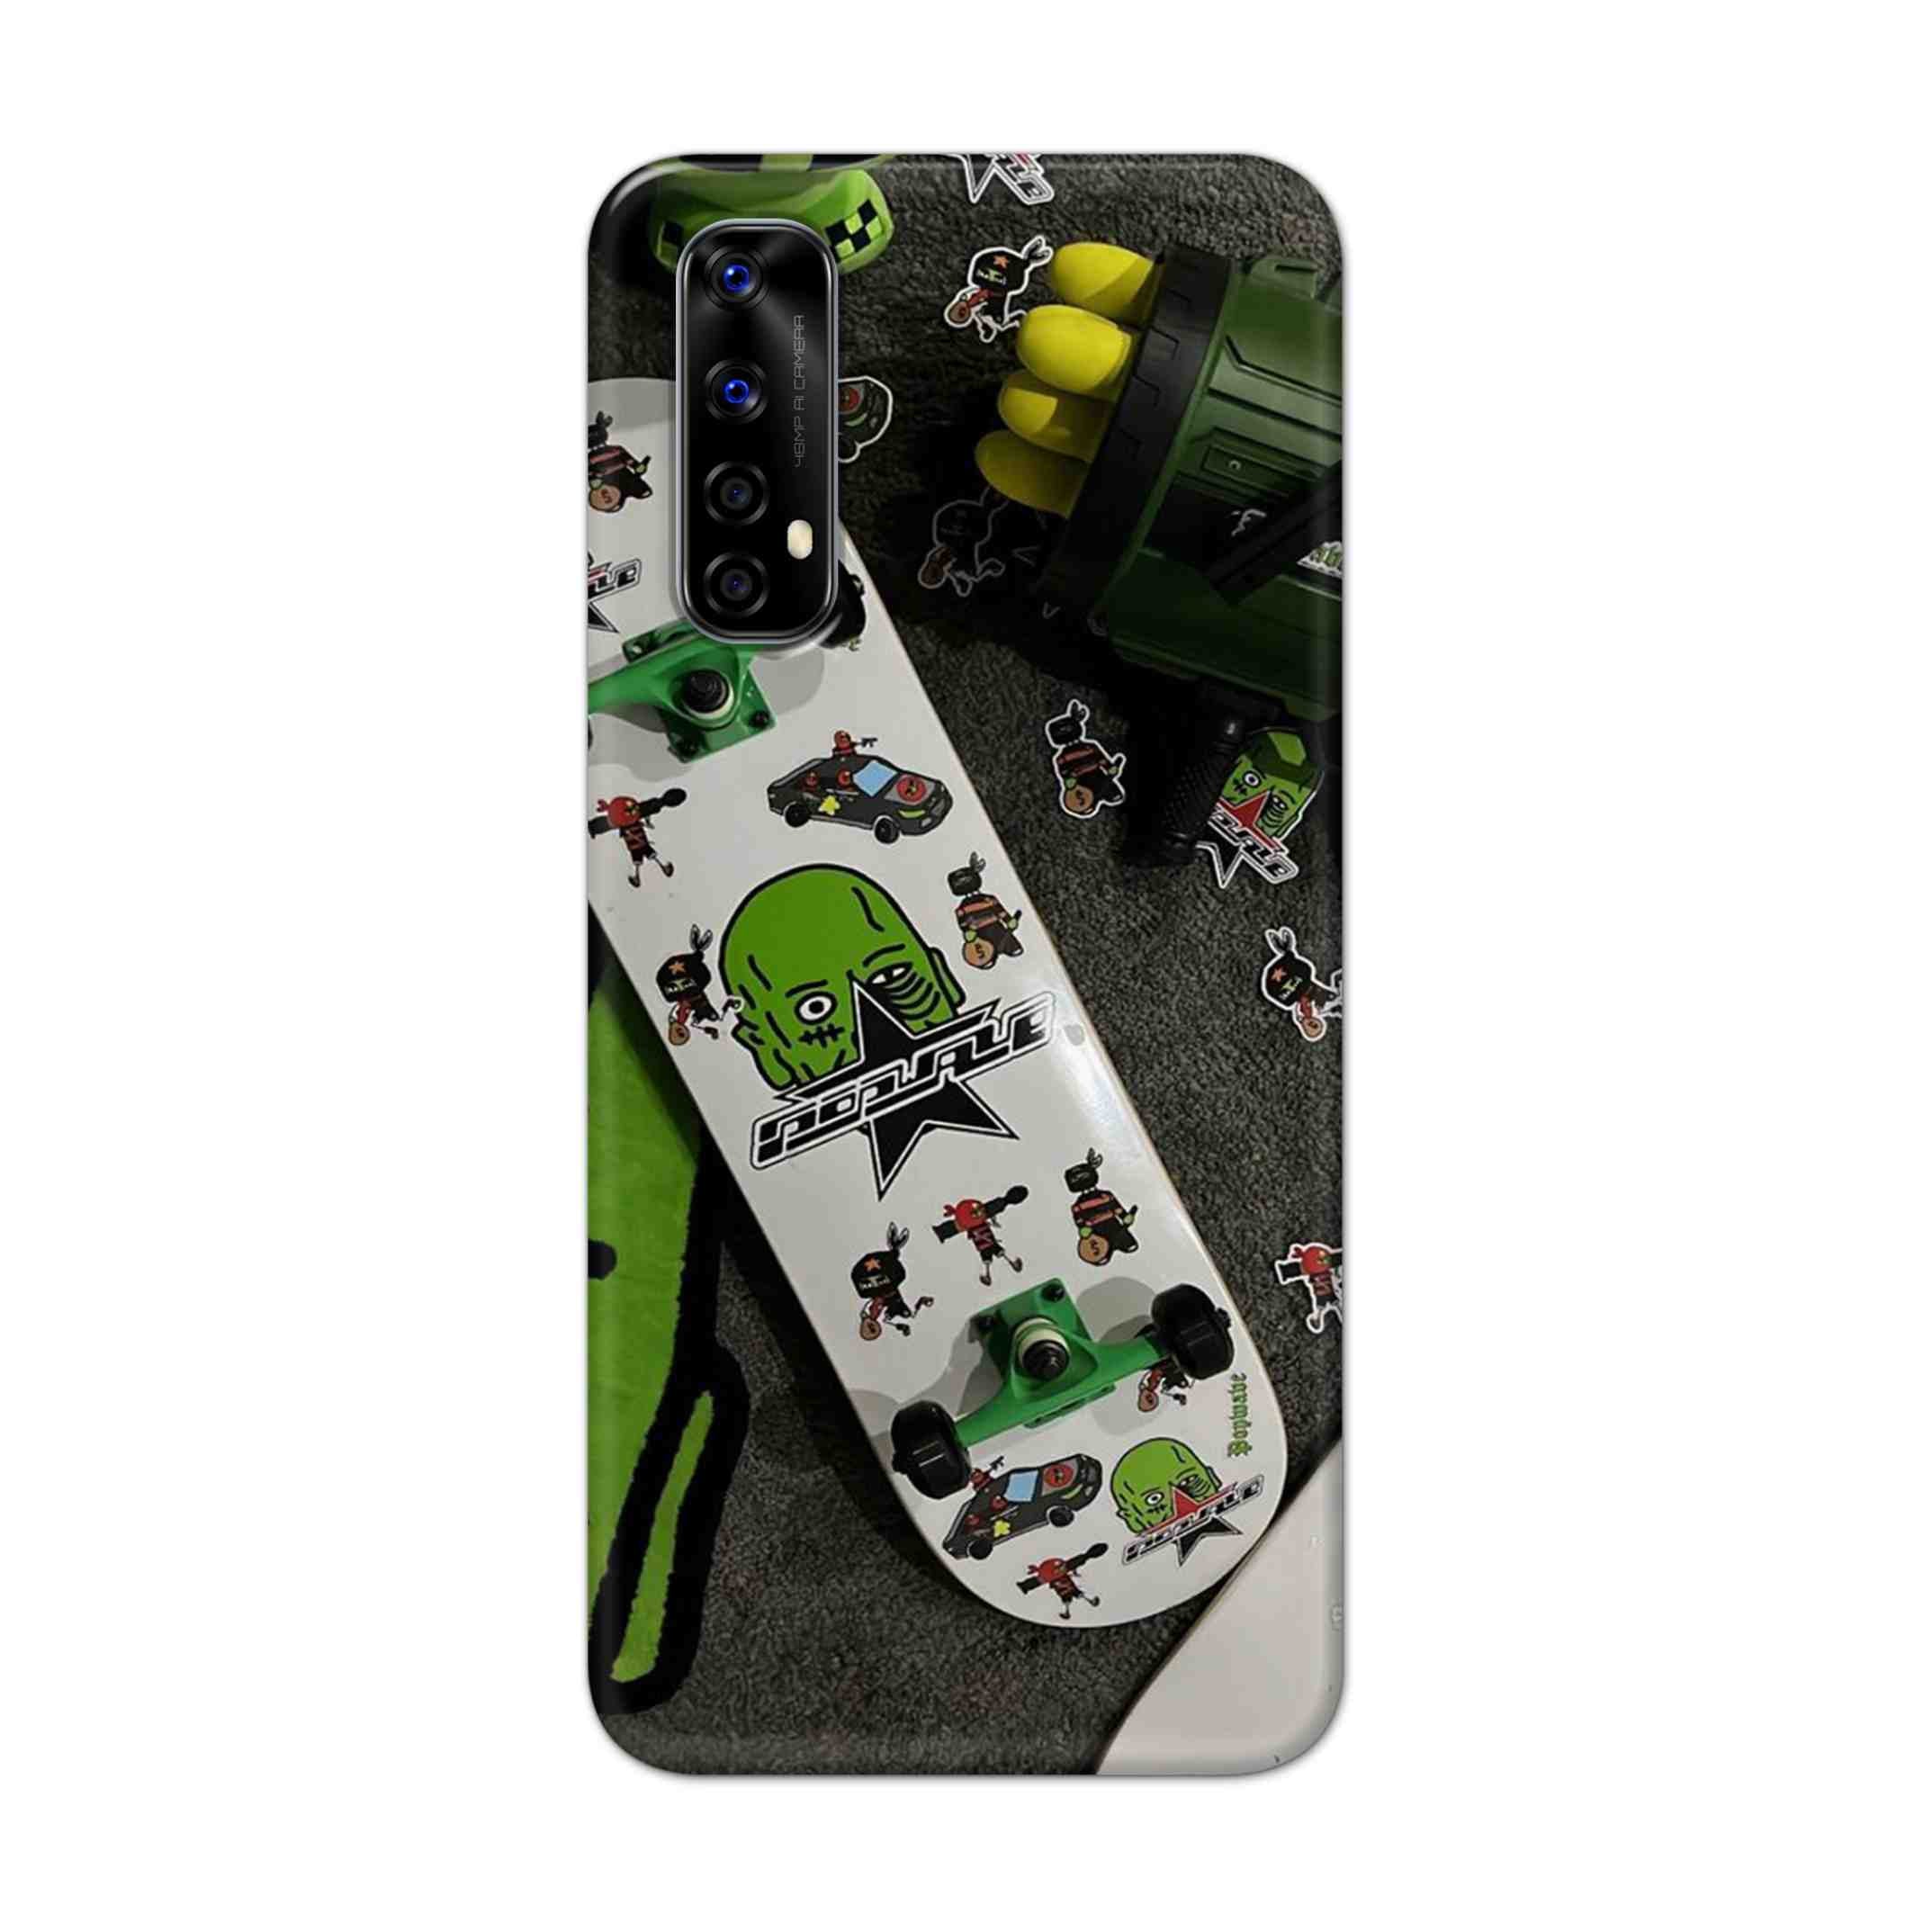 Buy Hulk Skateboard Hard Back Mobile Phone Case Cover For Realme Narzo 20 Pro Online